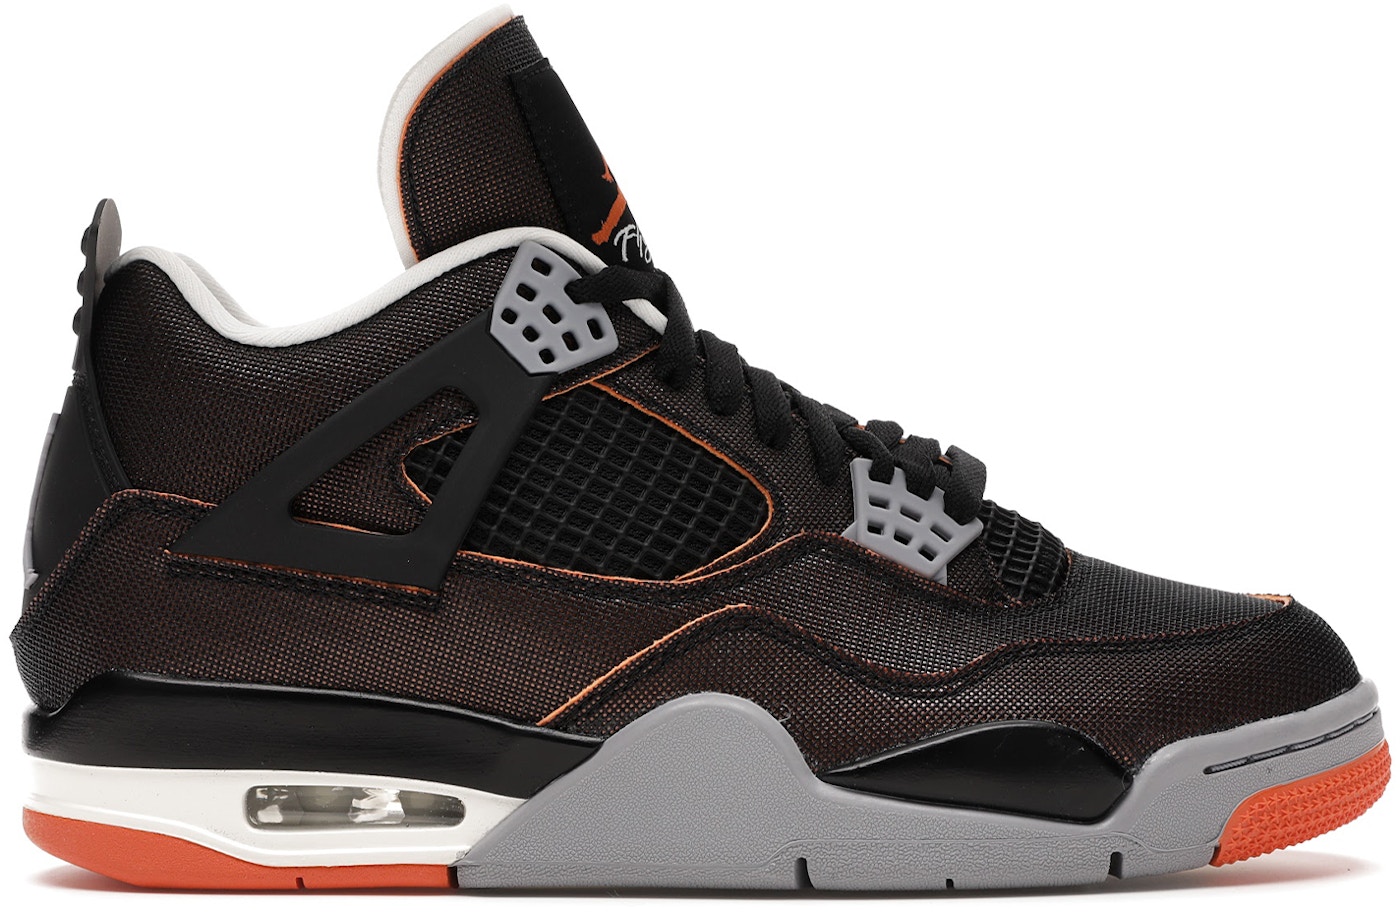 Air Jordan 4 Shoes Release Date